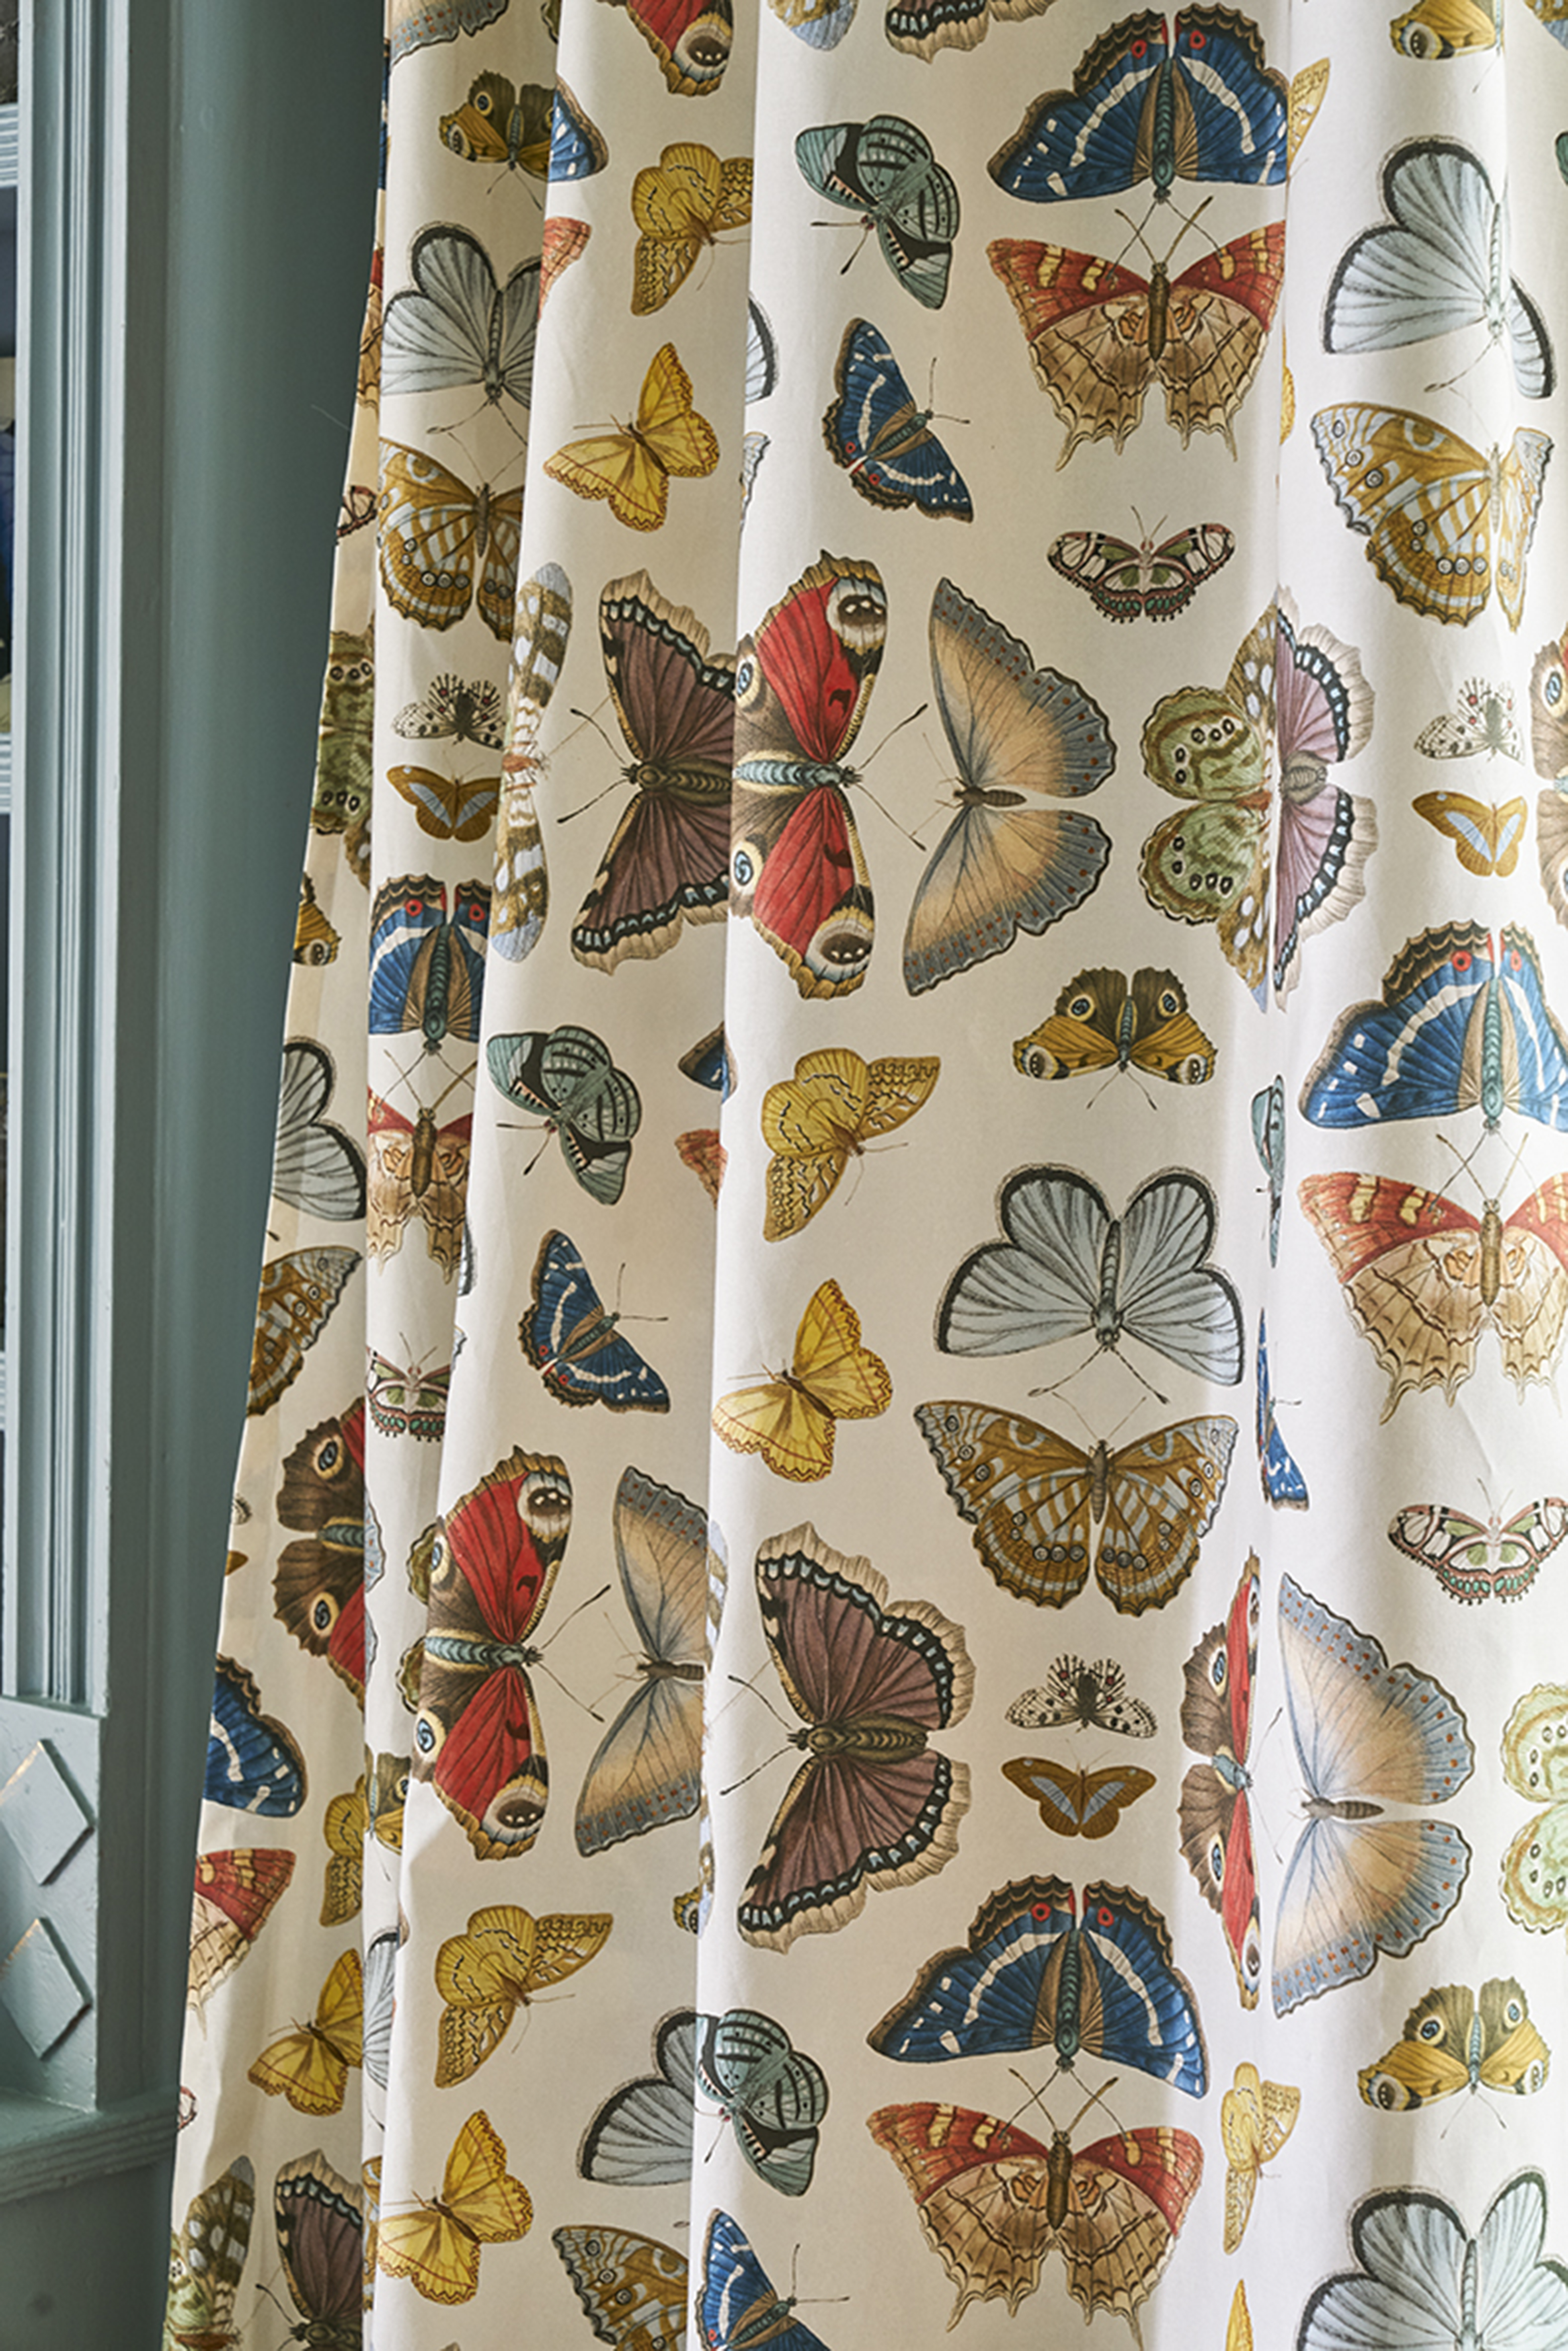 Ткань Mirrored Butterflies, коллекция Picture Book II, John Derian